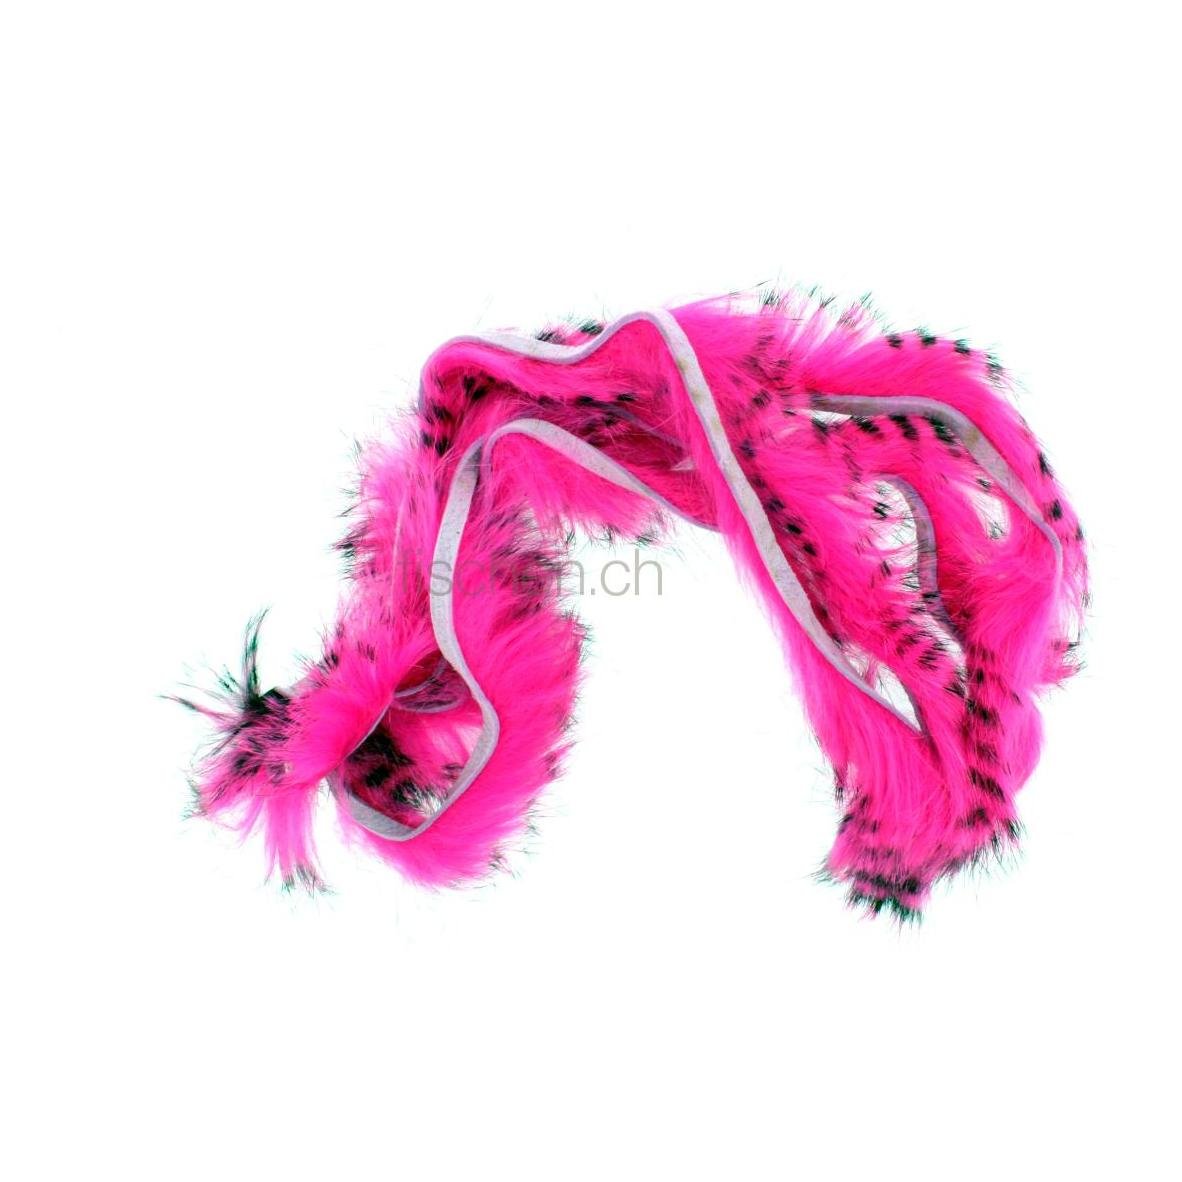 Image of Hareline Dubbin Black Barred Rabbit Strips - Hot Pink bei fischen.ch